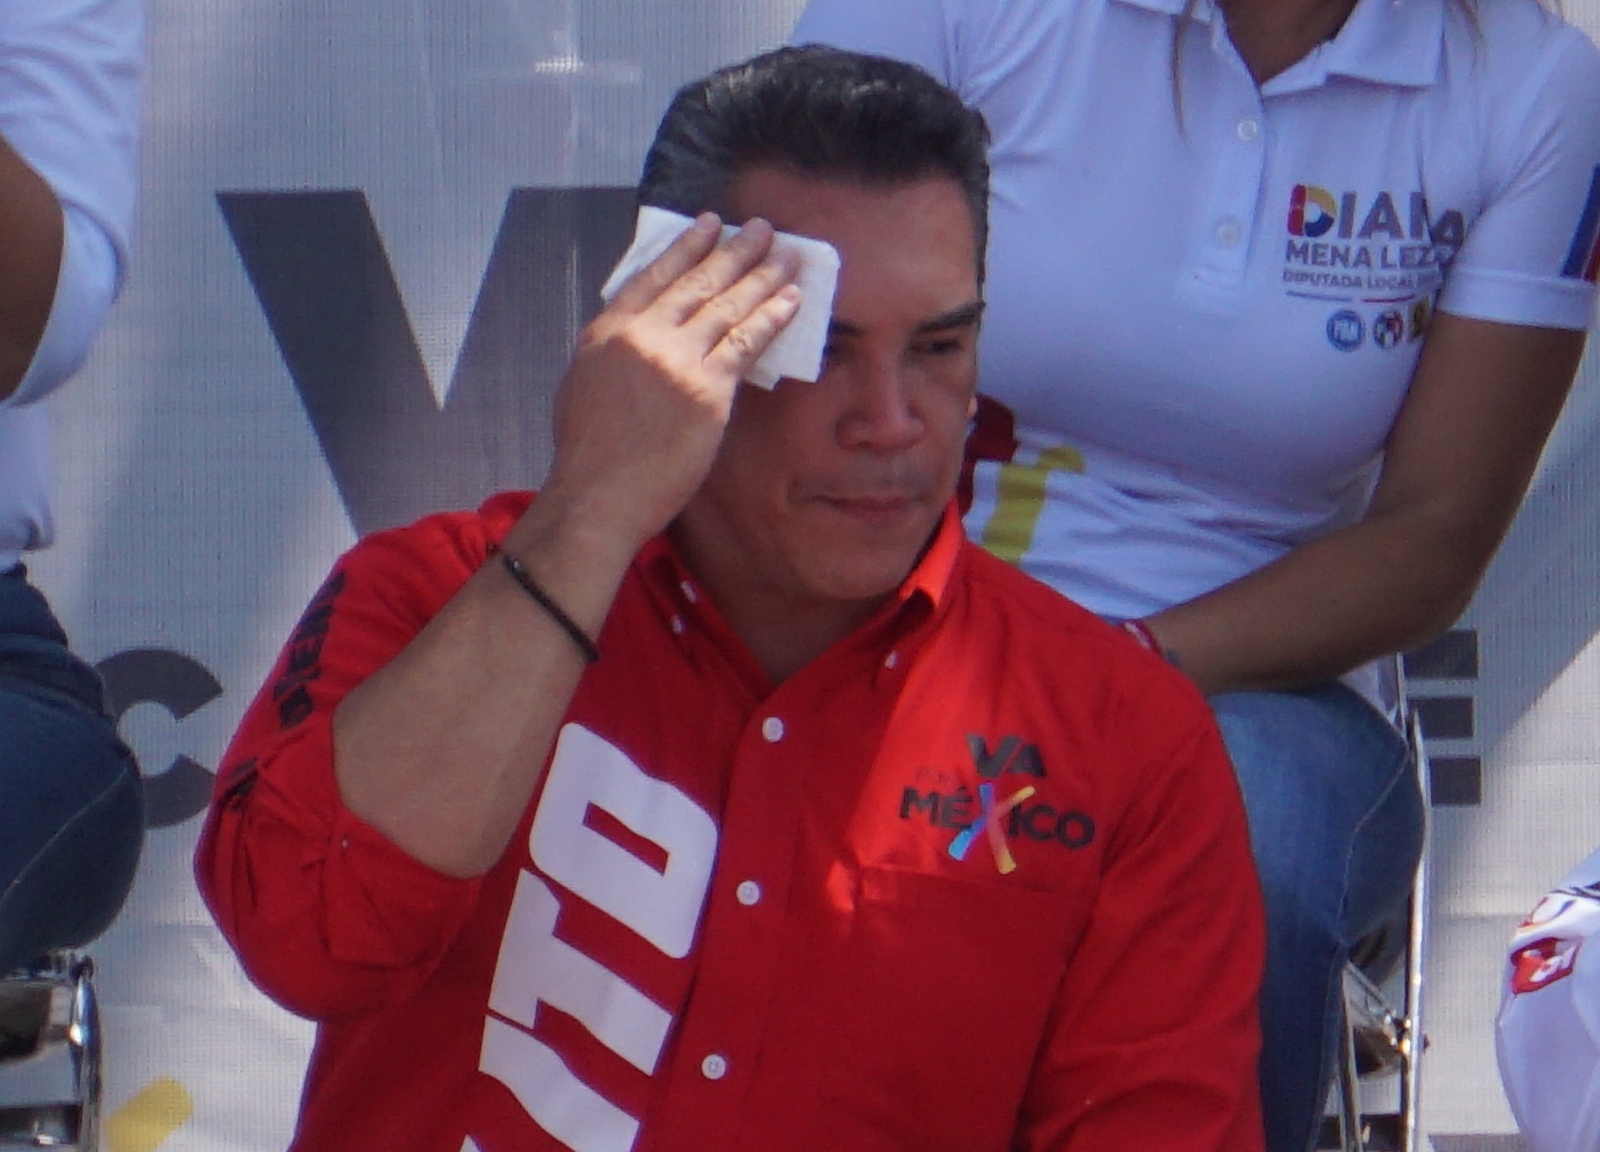 Las investigaciones en su contra y audios de Layda Sansores podrían tirar la carrera política del exgobernador de Campeche